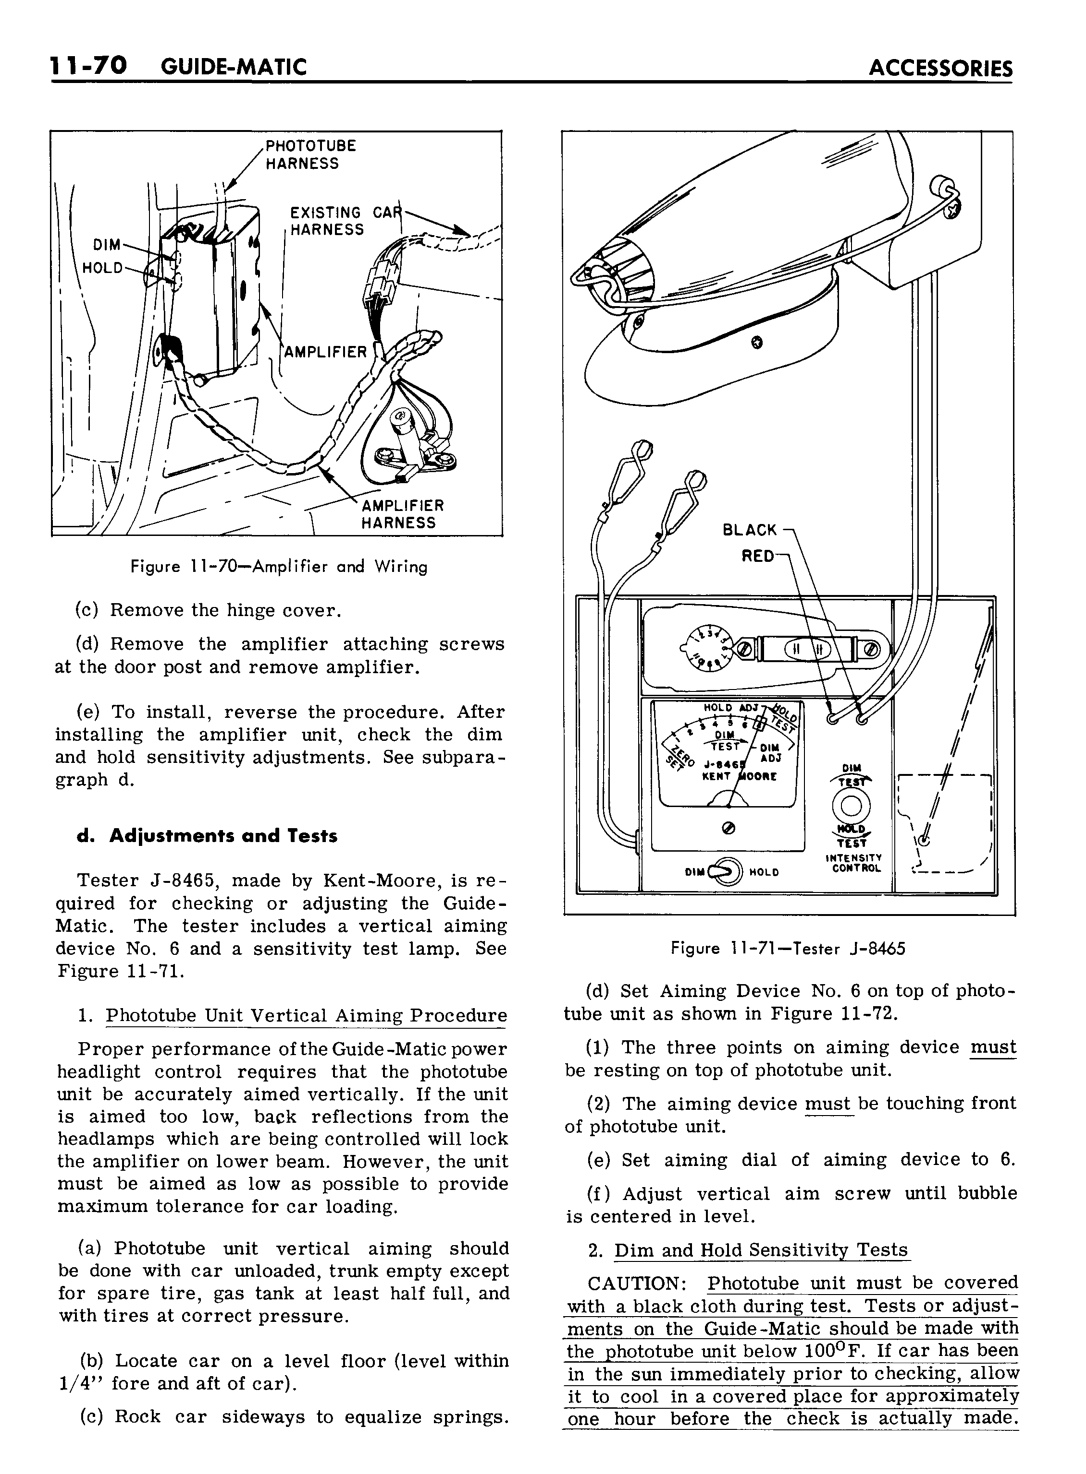 n_11 1961 Buick Shop Manual - Accessories-070-070.jpg